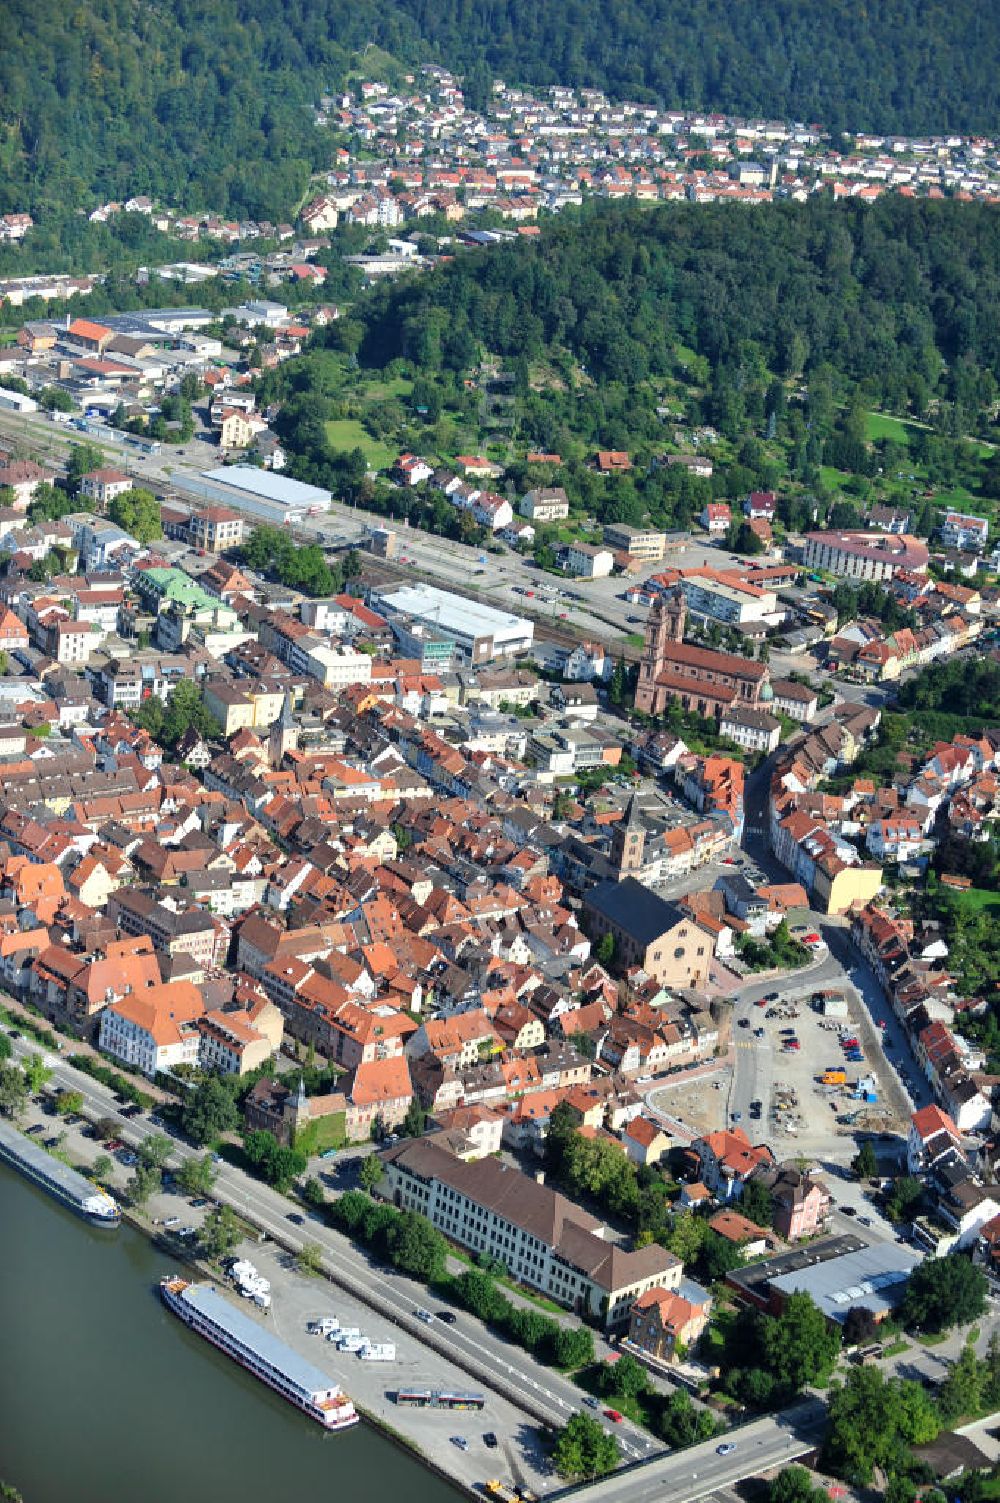 Aerial image EBERBACH - Stadtansicht Stadtzentrum von Eberbach in Baden-Württemberg. Cityscape of downtown Eberbach in Baden-Wuerttemberg.